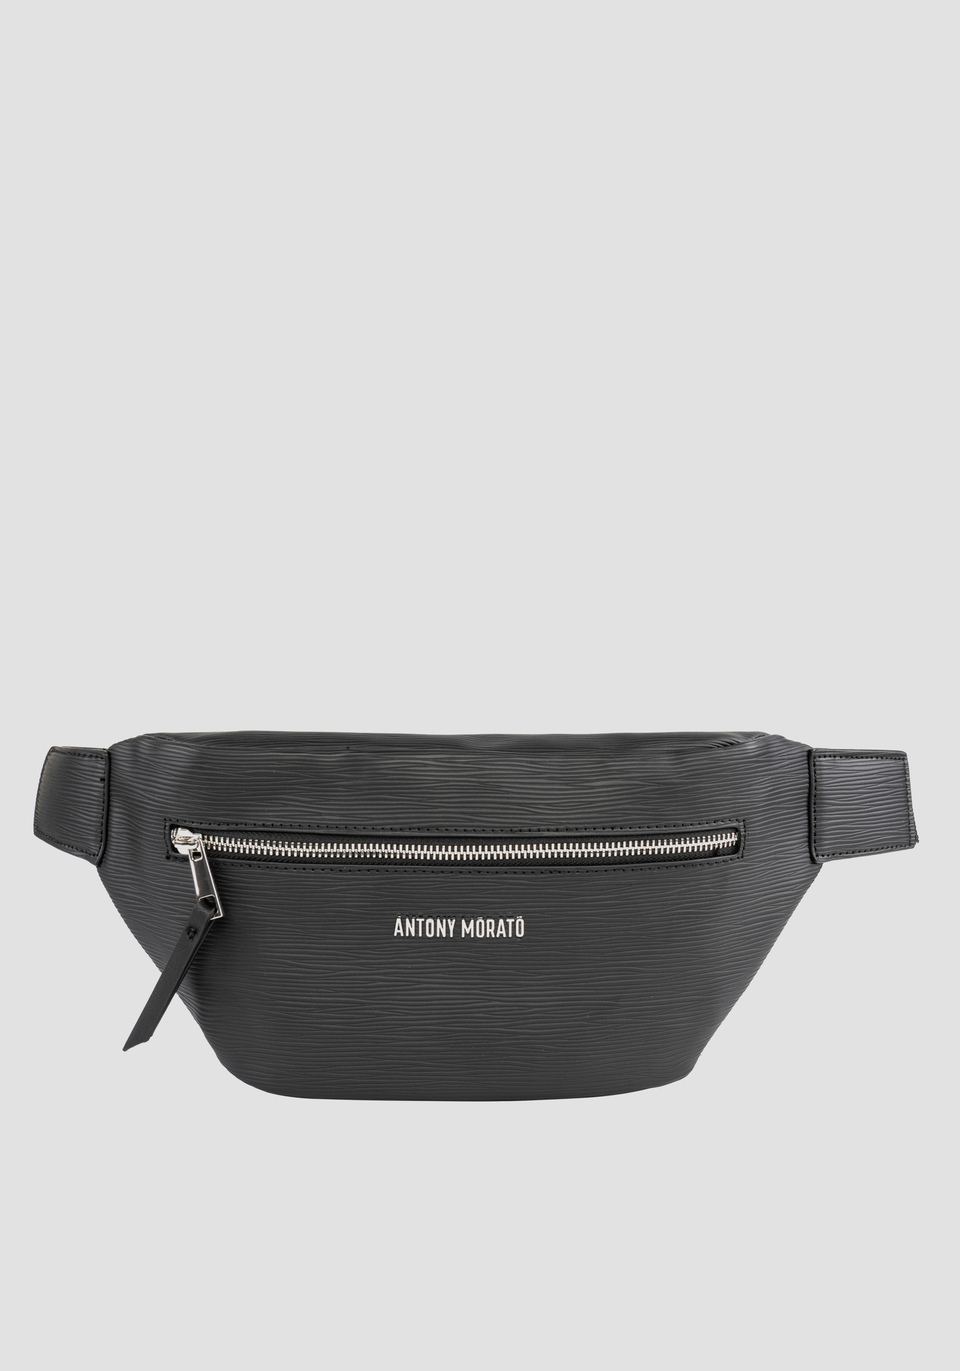 SOLID COLOUR BUM BAG IN A PALMELLATO EFFECT FABRIC - Antony Morato Online Shop